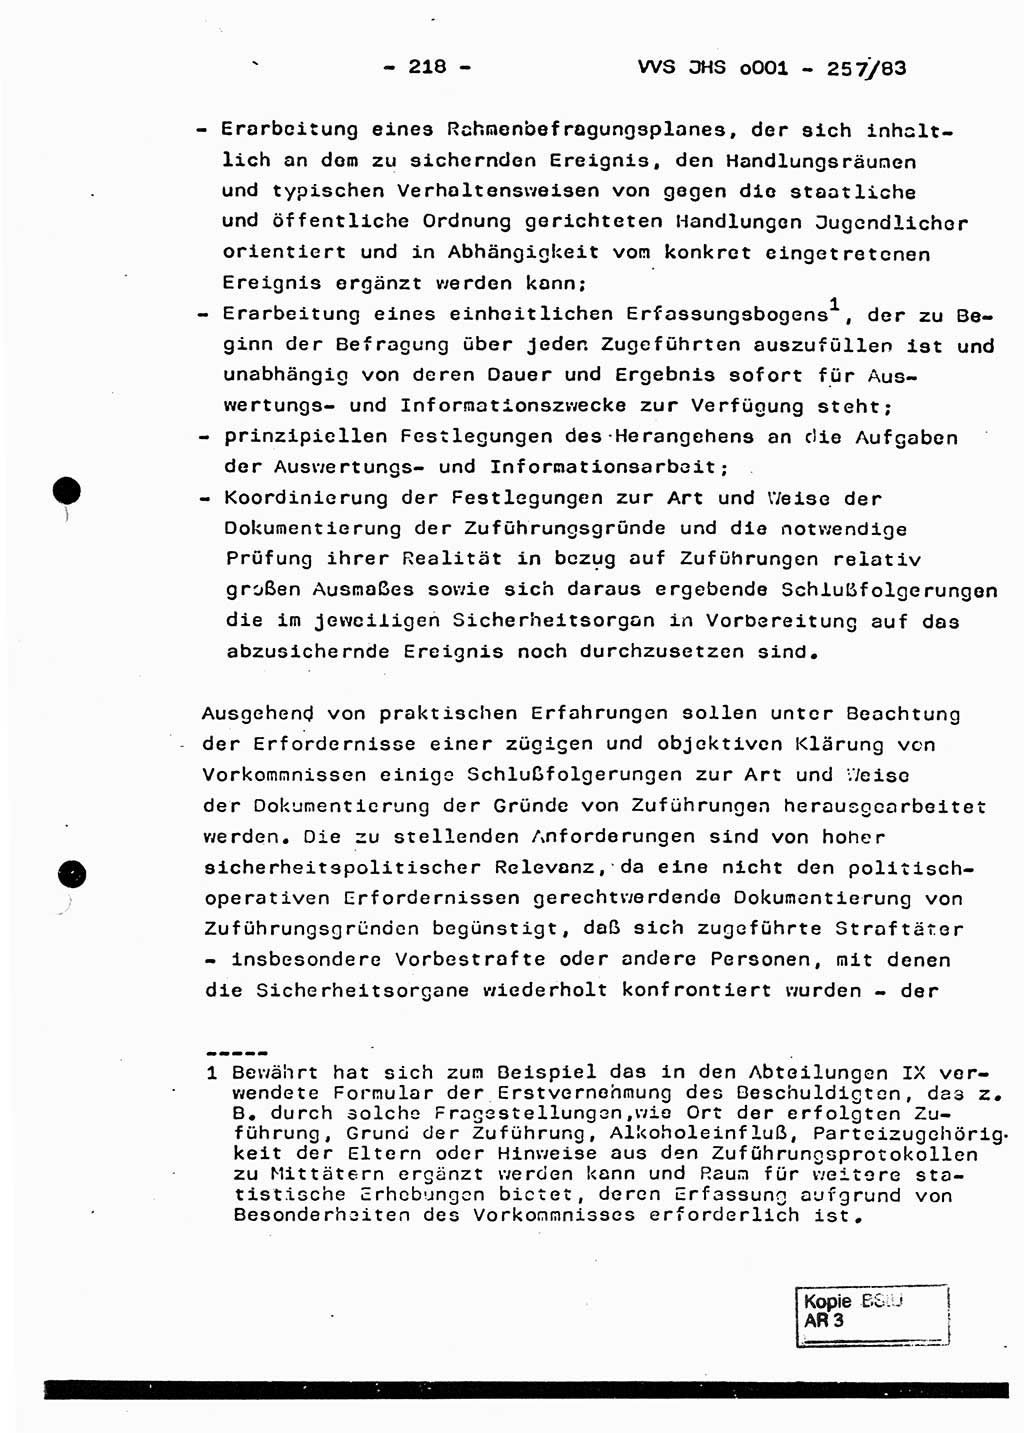 Dissertation, Oberst Helmut Lubas (BV Mdg.), Oberstleutnant Manfred Eschberger (HA IX), Oberleutnant Hans-Jürgen Ludwig (JHS), Ministerium für Staatssicherheit (MfS) [Deutsche Demokratische Republik (DDR)], Juristische Hochschule (JHS), Vertrauliche Verschlußsache (VVS) o001-257/83, Potsdam 1983, Seite 218 (Diss. MfS DDR JHS VVS o001-257/83 1983, S. 218)